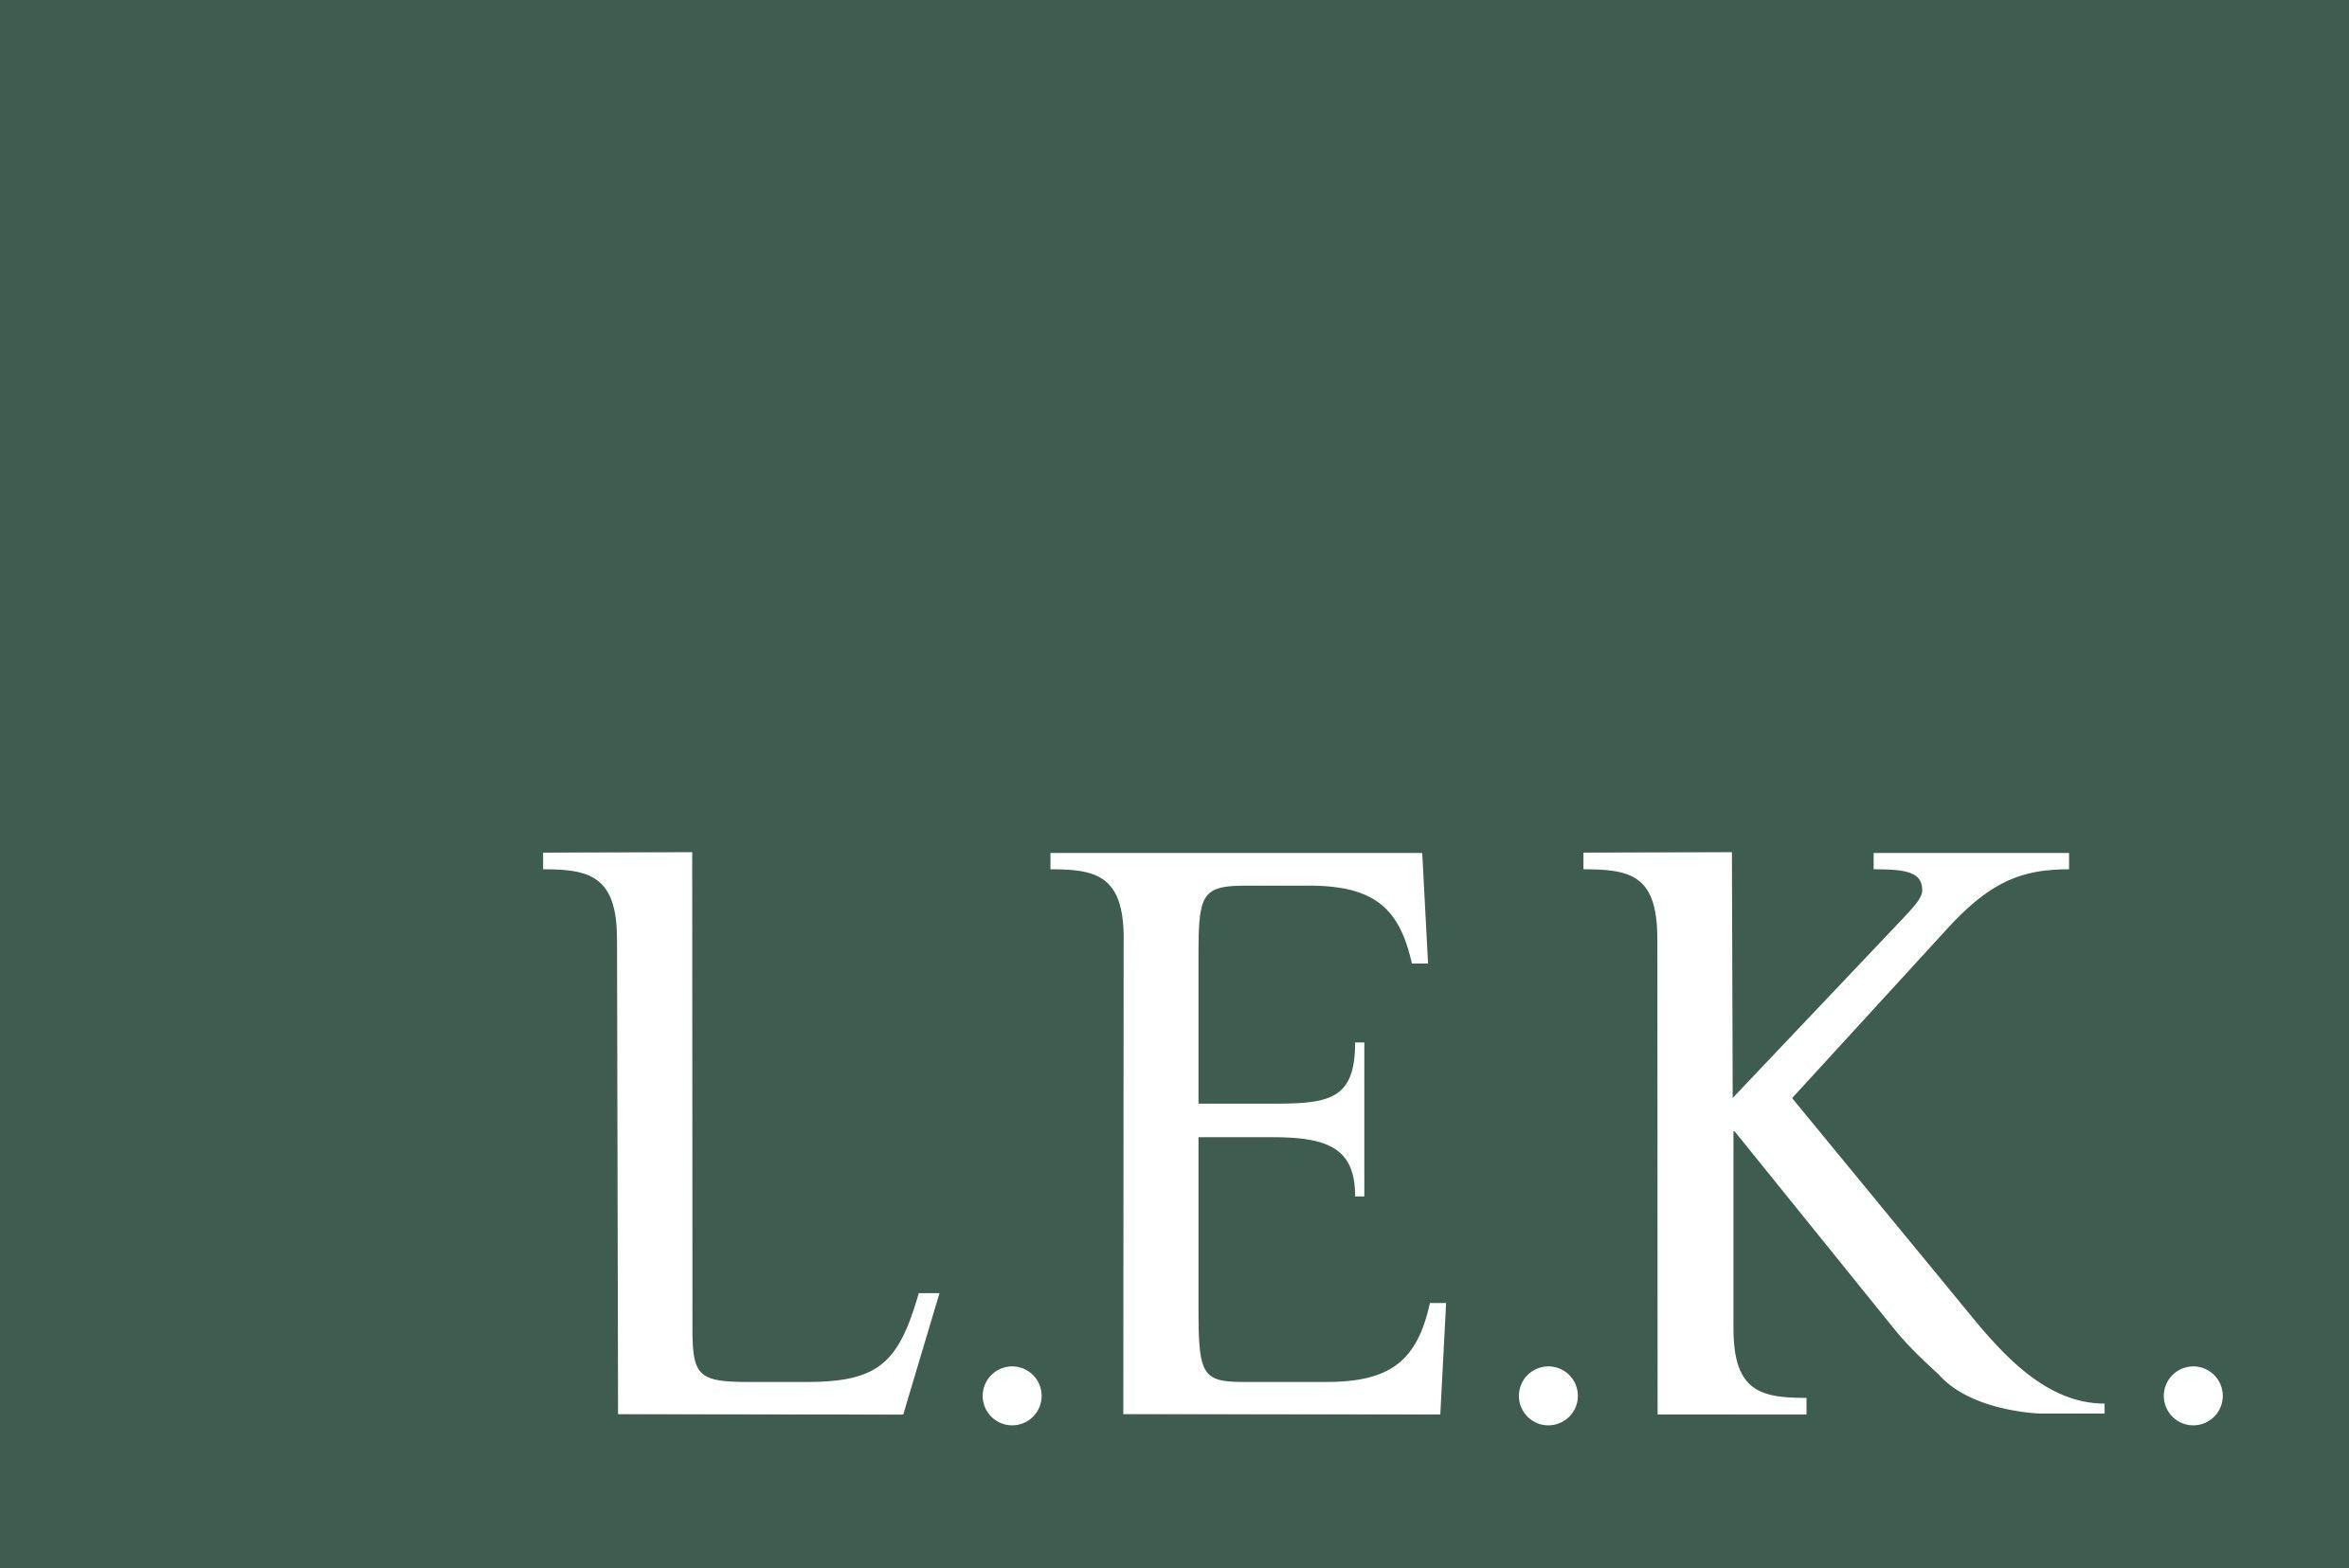 Leki Logo - LEK logo - Management Leadership for Tomorrow